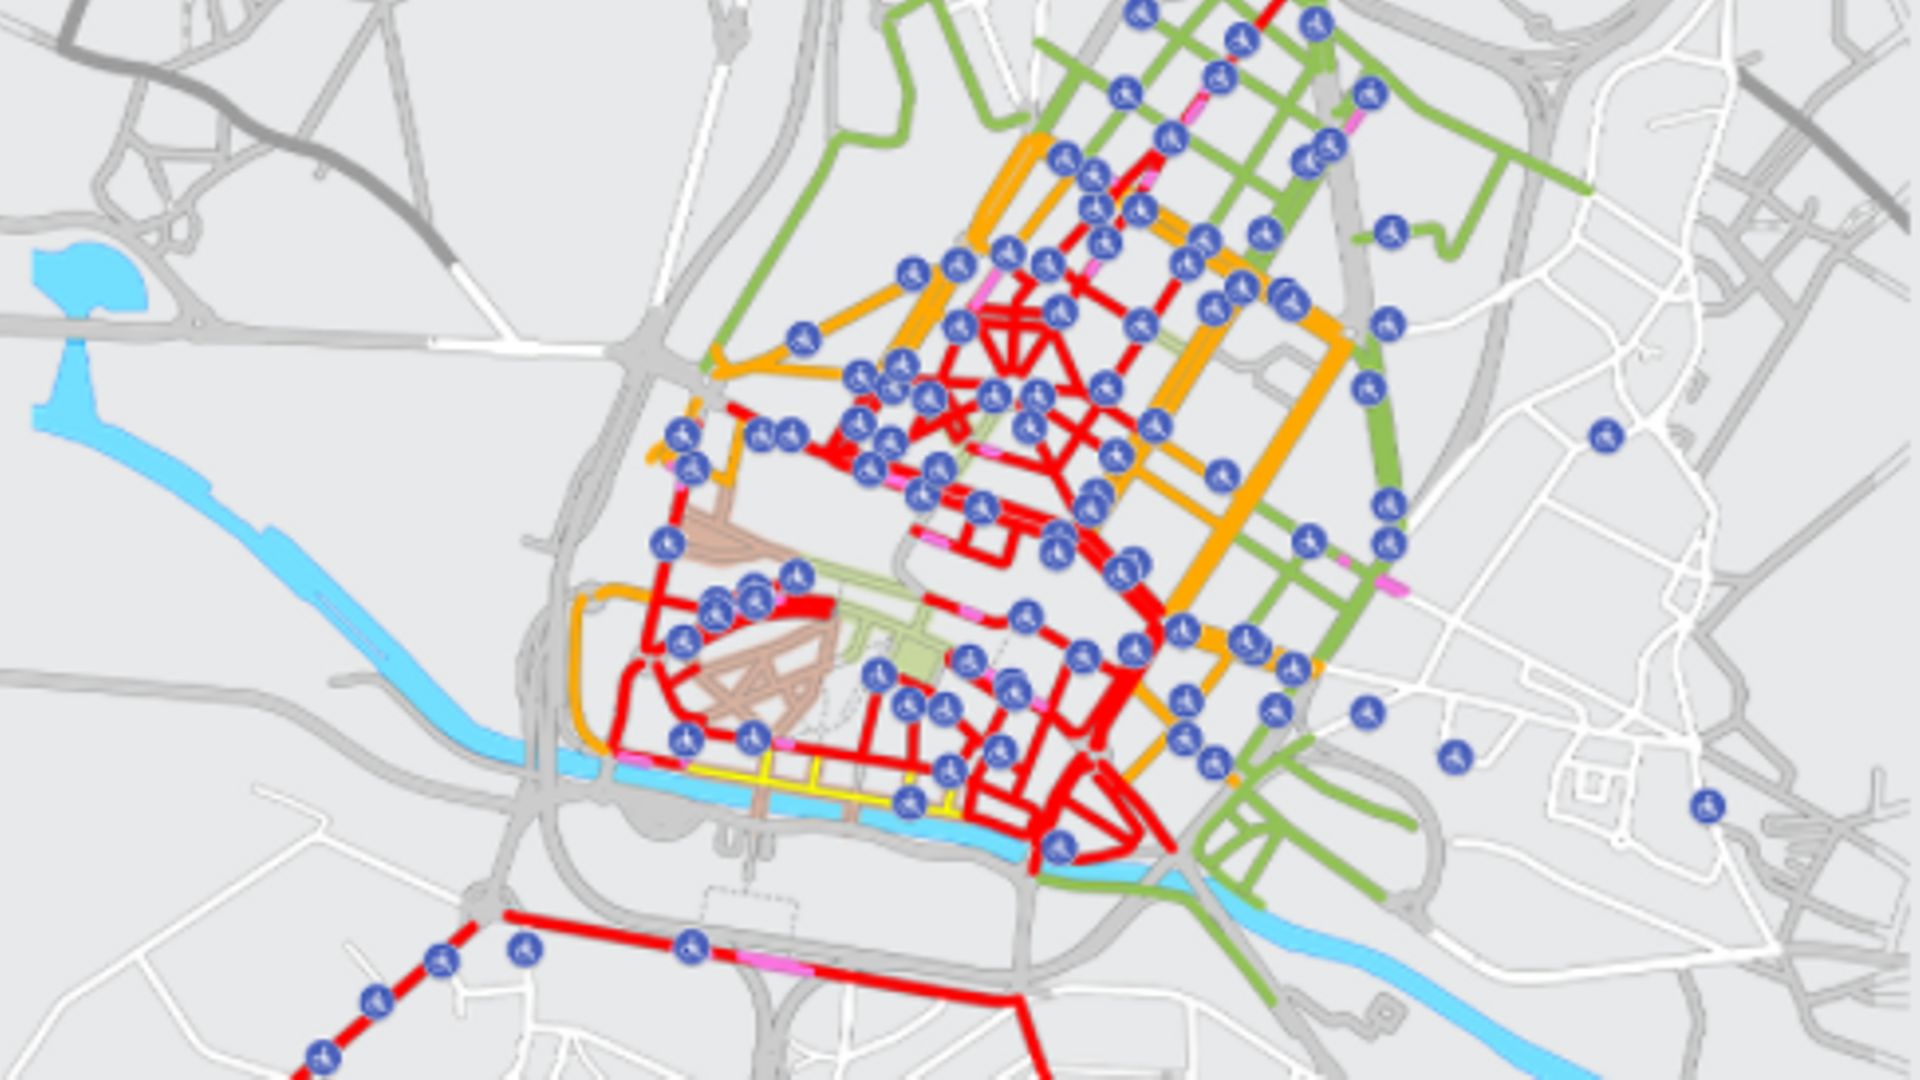 Carte du Plan de stationnement dans le centre-ville de Charleroi après le réaménagement.